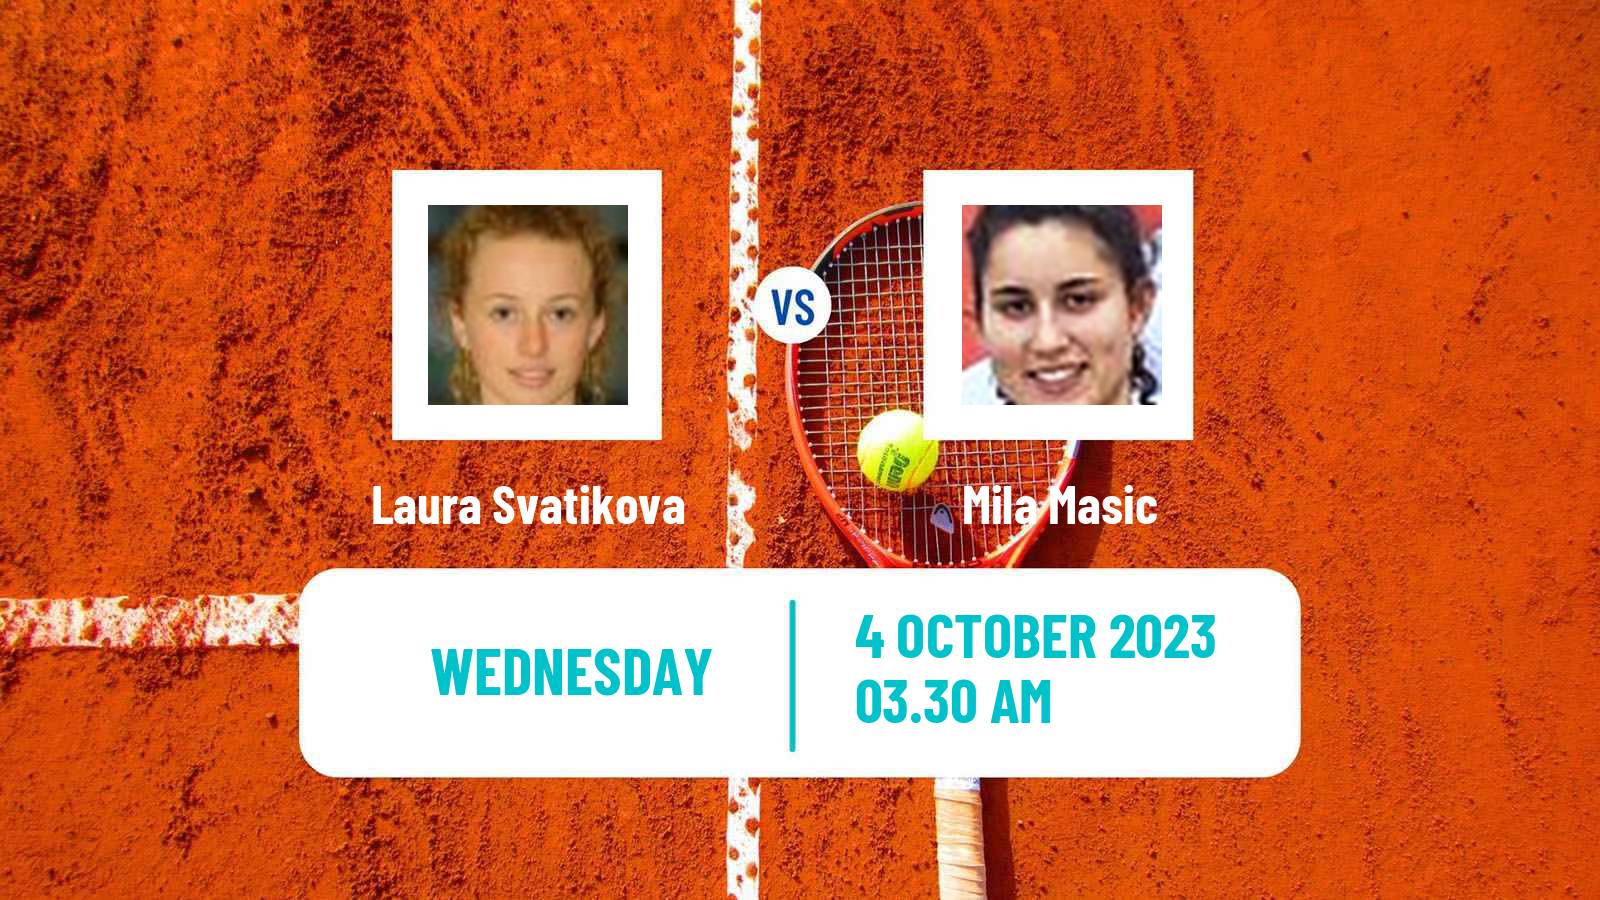 Tennis ITF W15 Bad Waltersdorf Women Laura Svatikova - Mila Masic